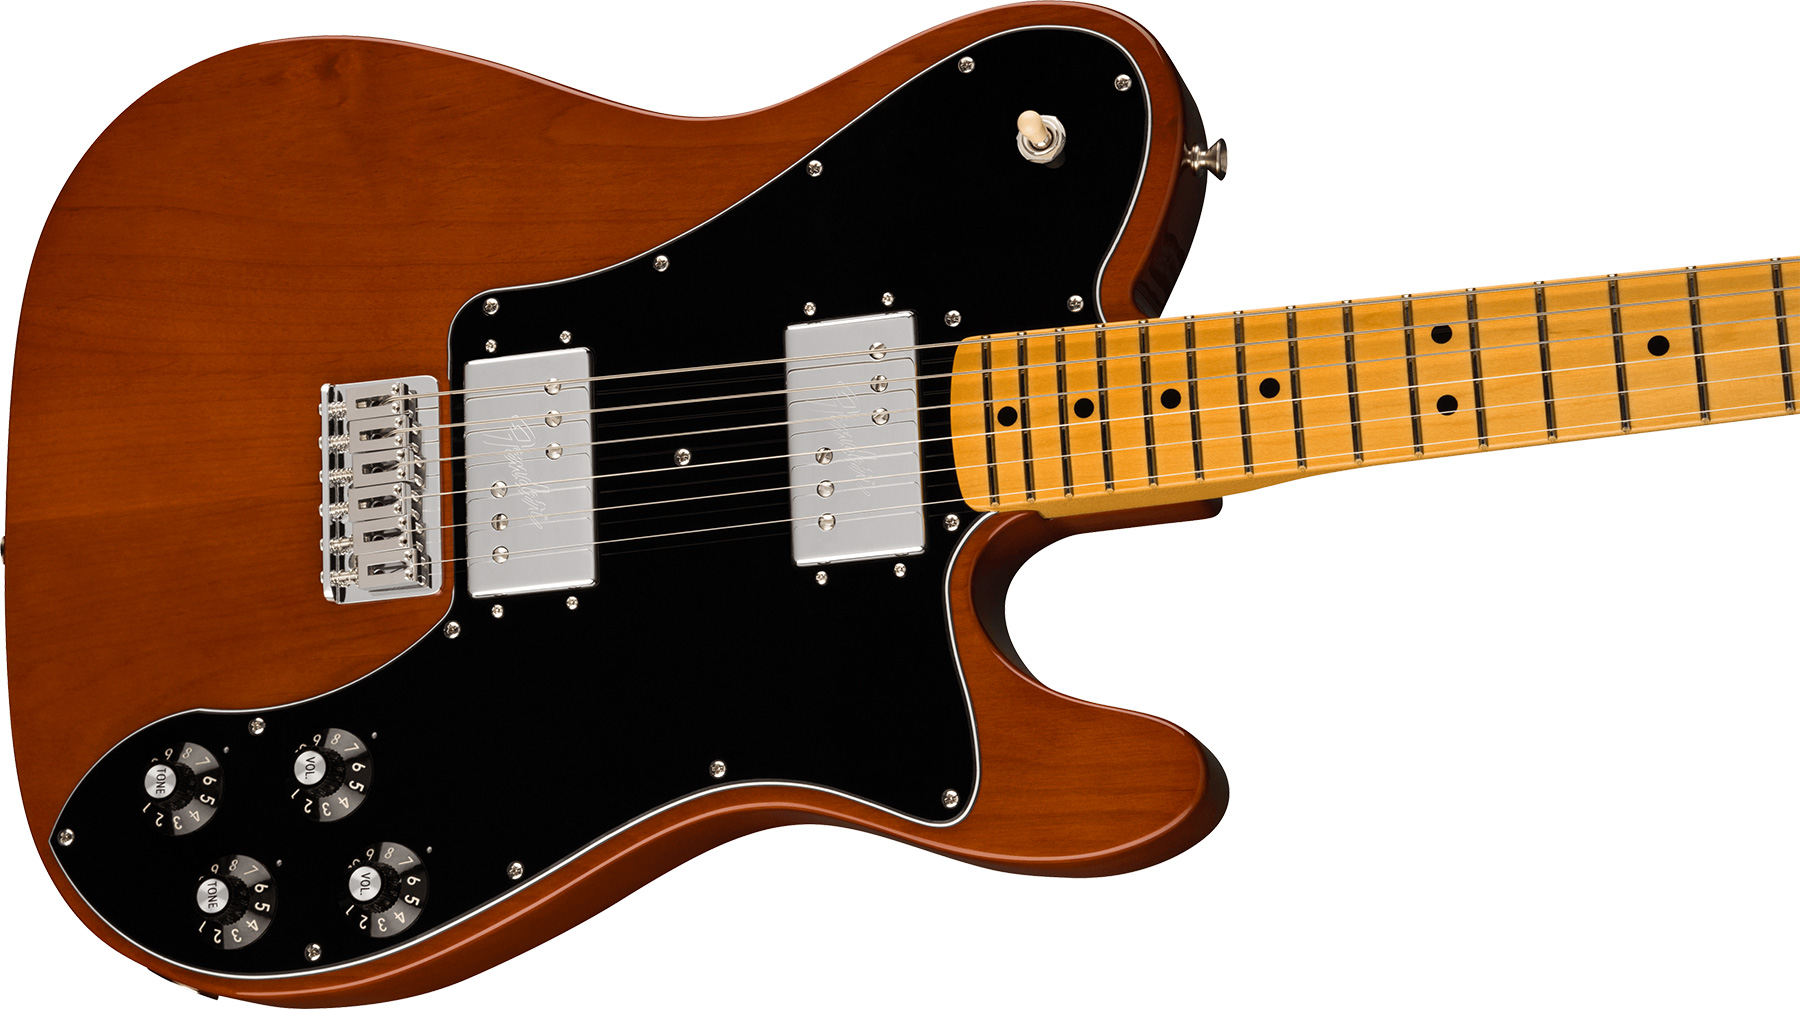 Fender Tele Deluxe 1975 American Vintage Ii Usa 2h Ht Mn - Mocha - Guitarra eléctrica con forma de tel - Variation 1